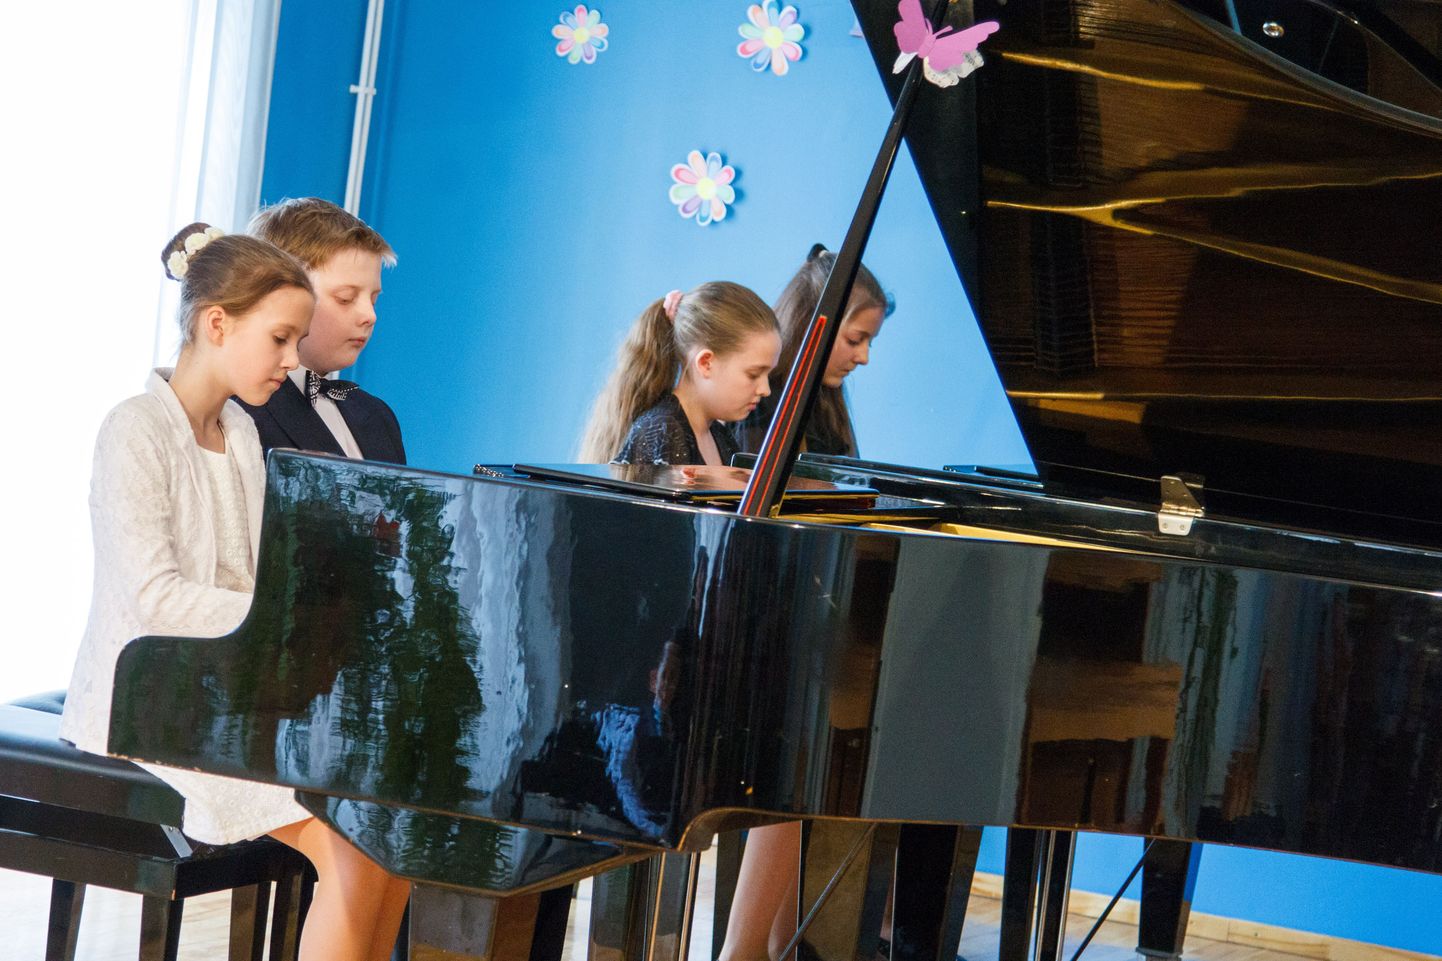 Smiltene muusikakooli õpilased esitasid neljakesi kahel klaveril meeleoluka läti rahvaviisi. Ansamblisse kuulusid Kristina Jaunbērziņa, Keita Šiliņa, Kārlis Sīmanis ja Marta Jakoviča.